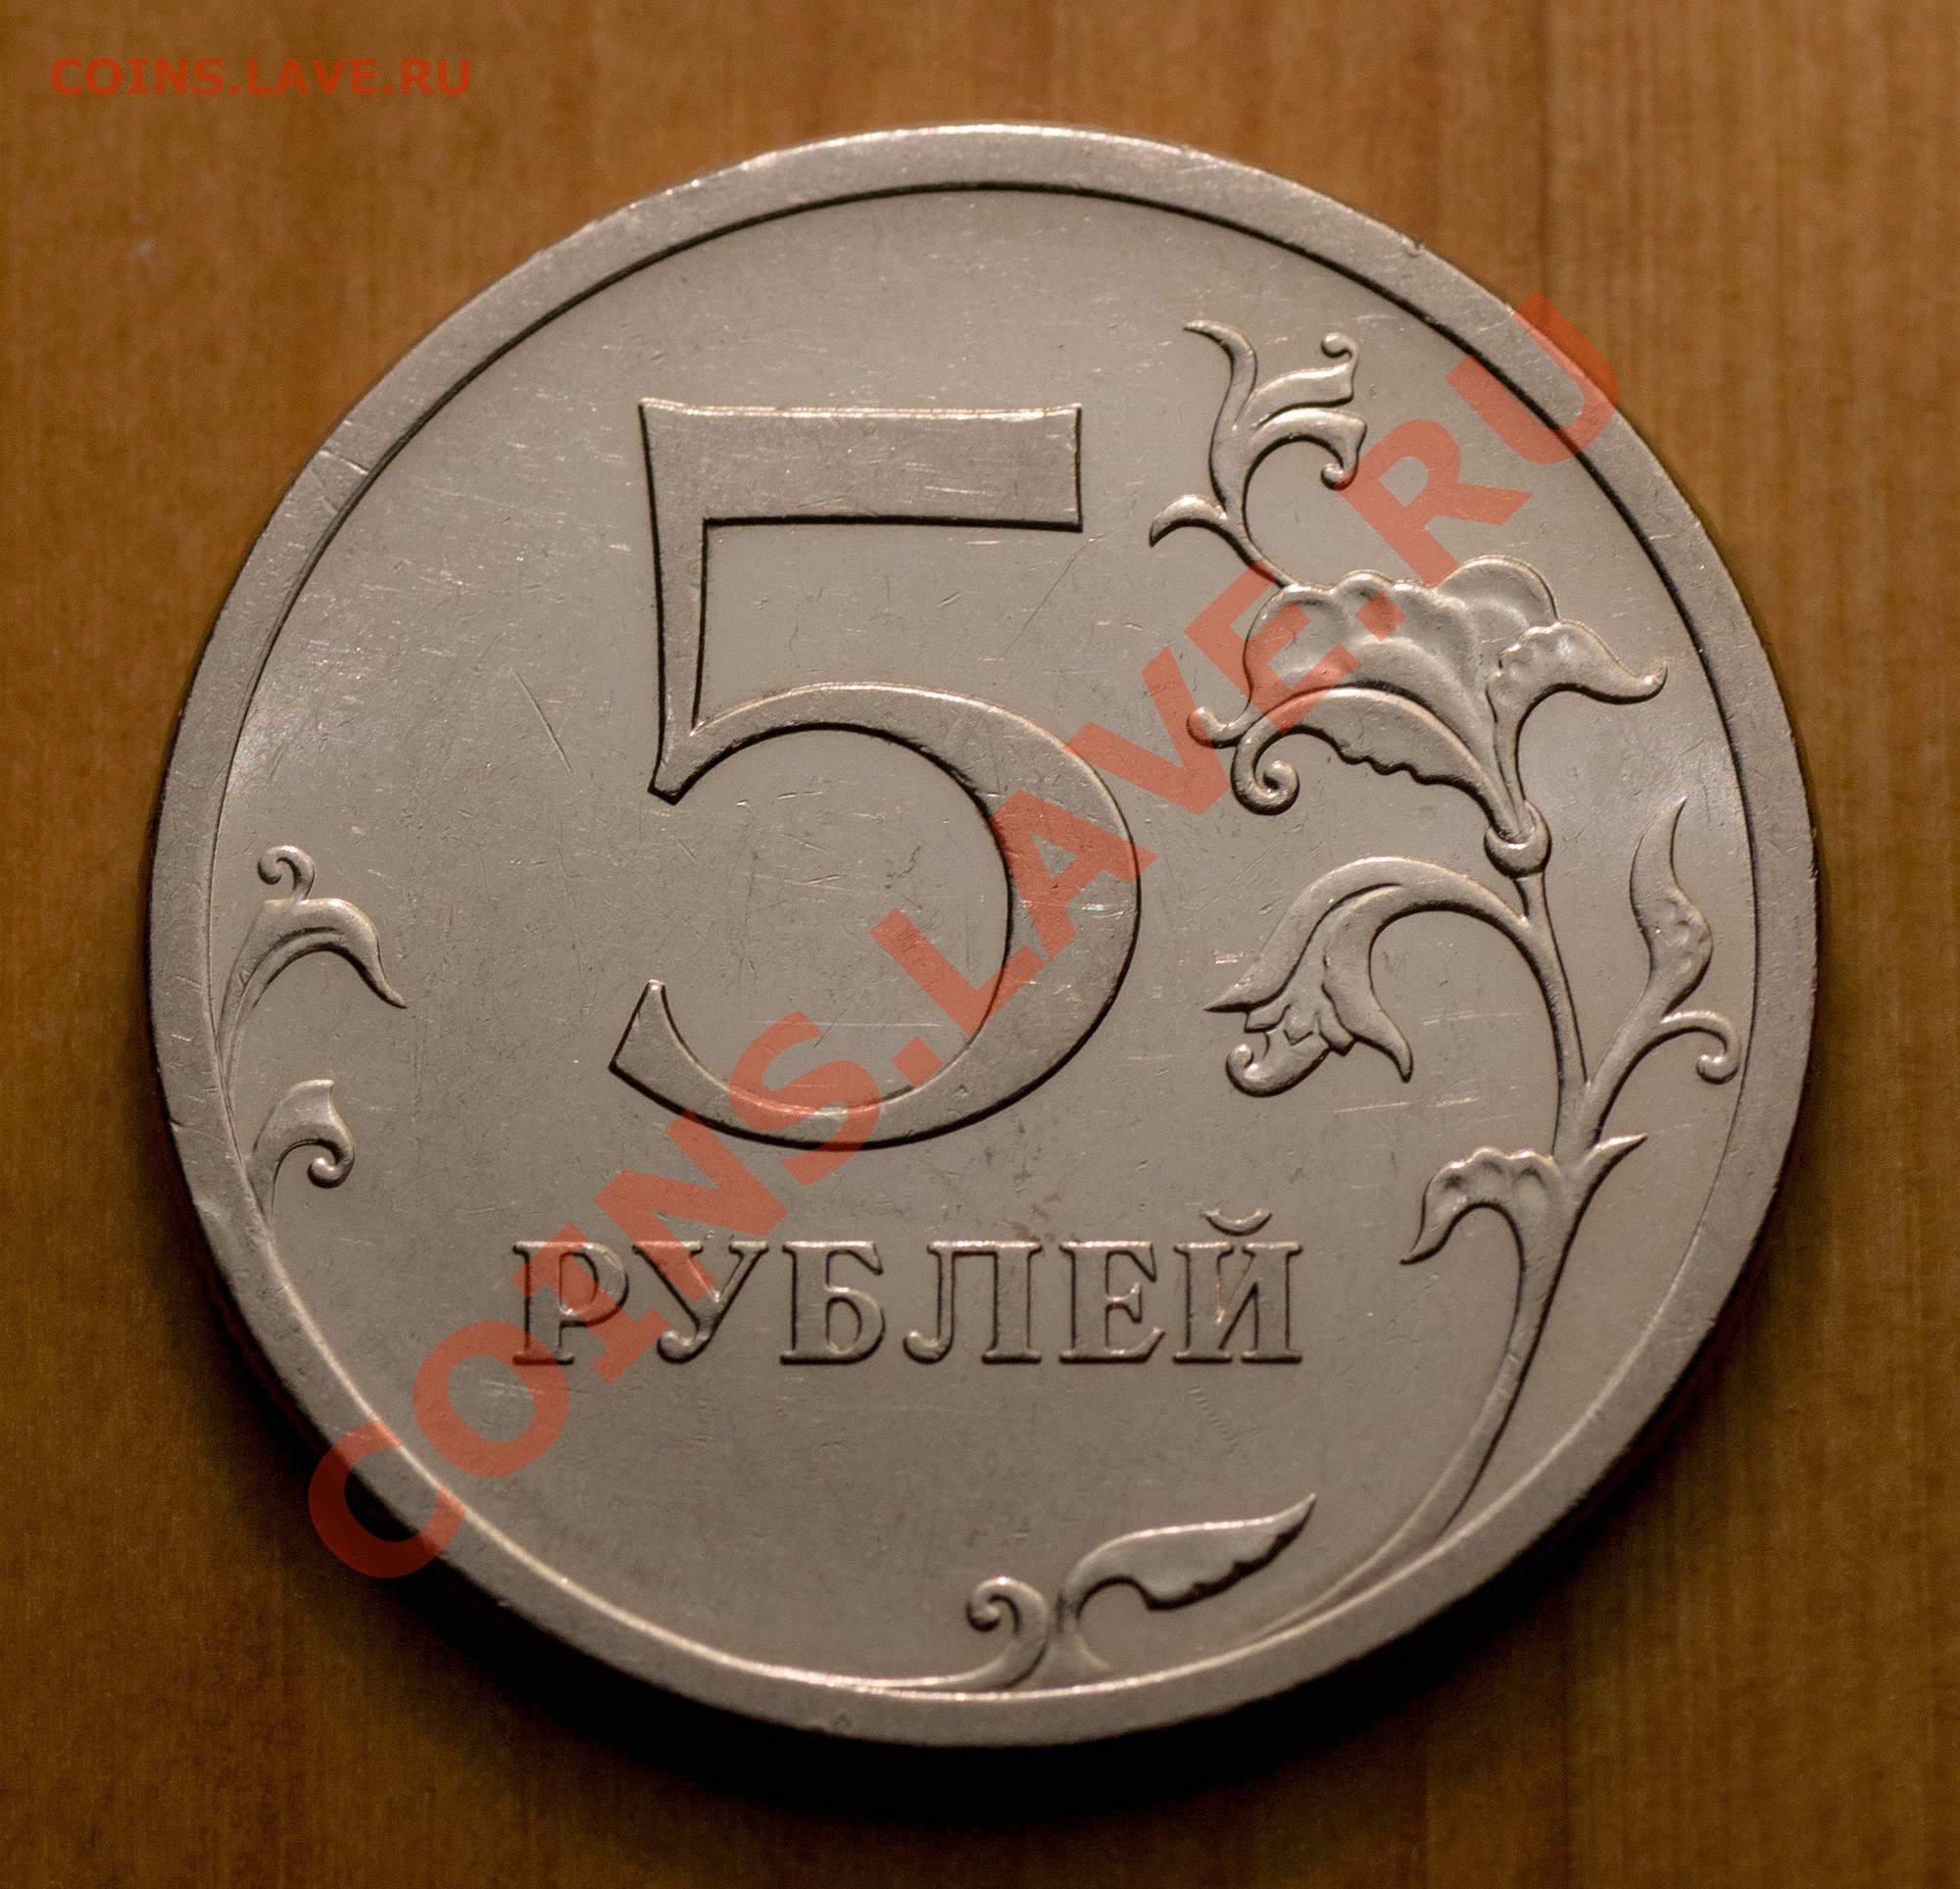 Рубль 5 34. Пять рублей 2009 г.штемпель 5.24. 5 Р класс. Монеты магнит. 5р класс картинки.